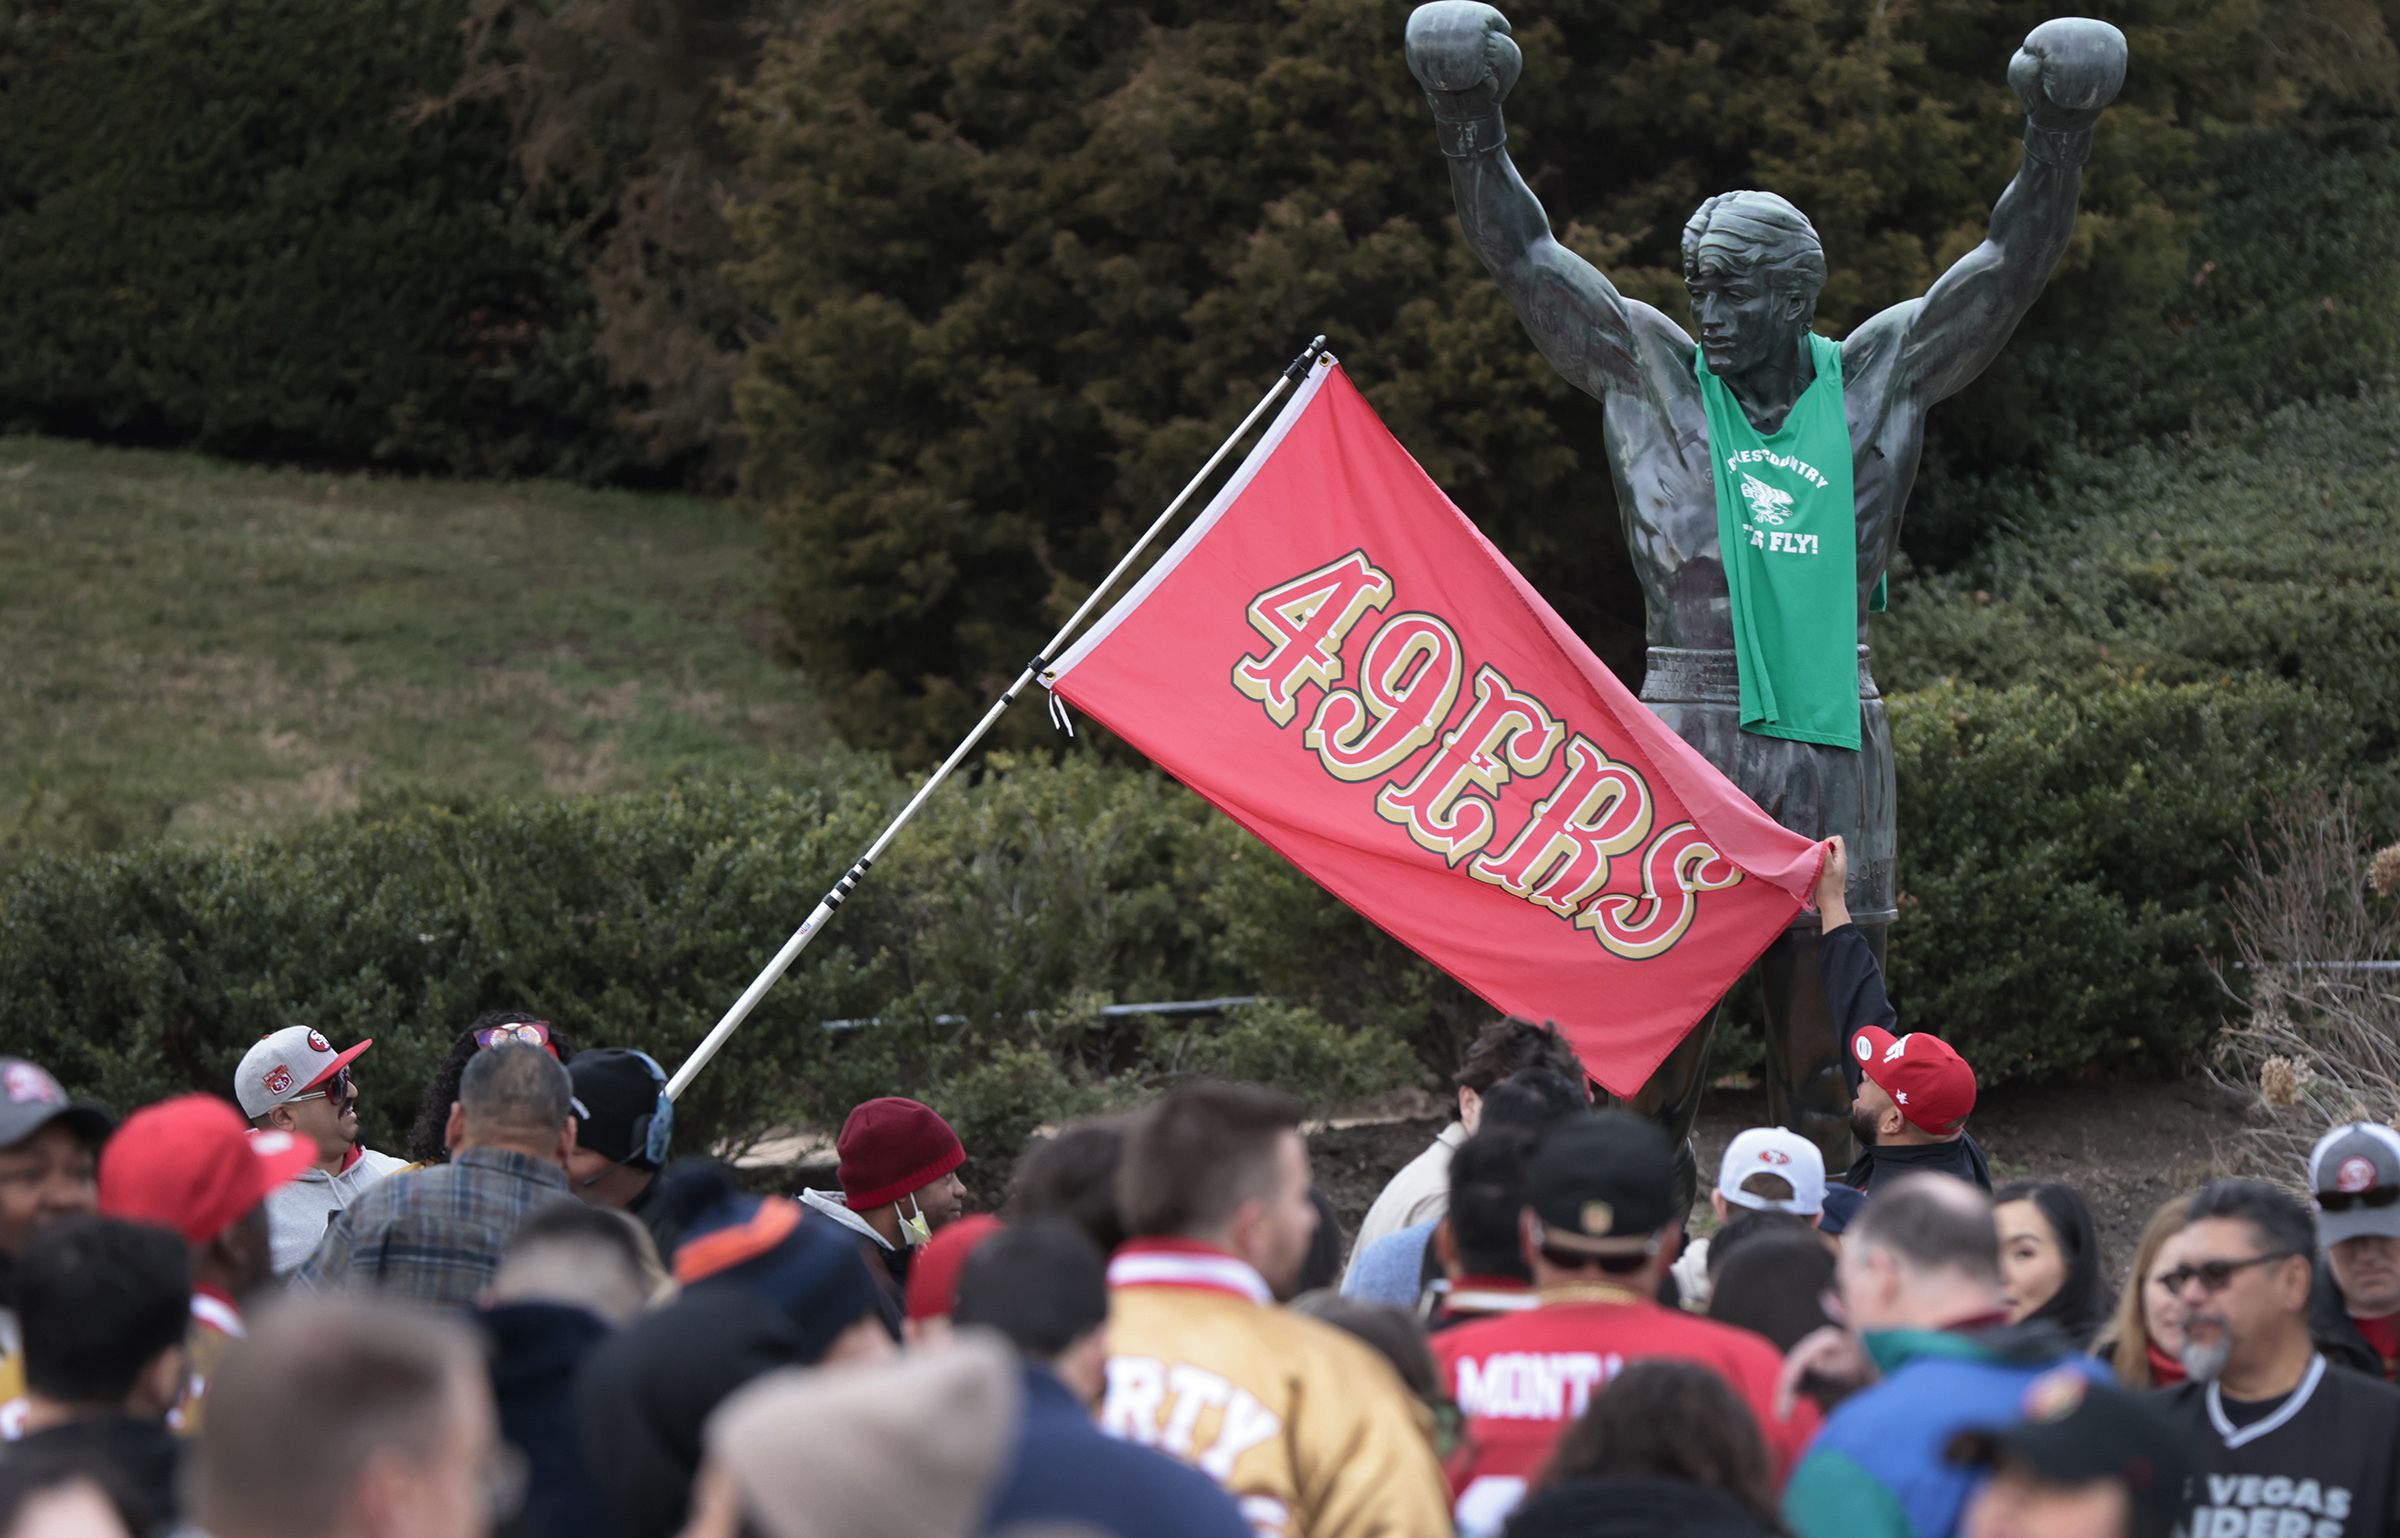 rocky statue 49ers shirt